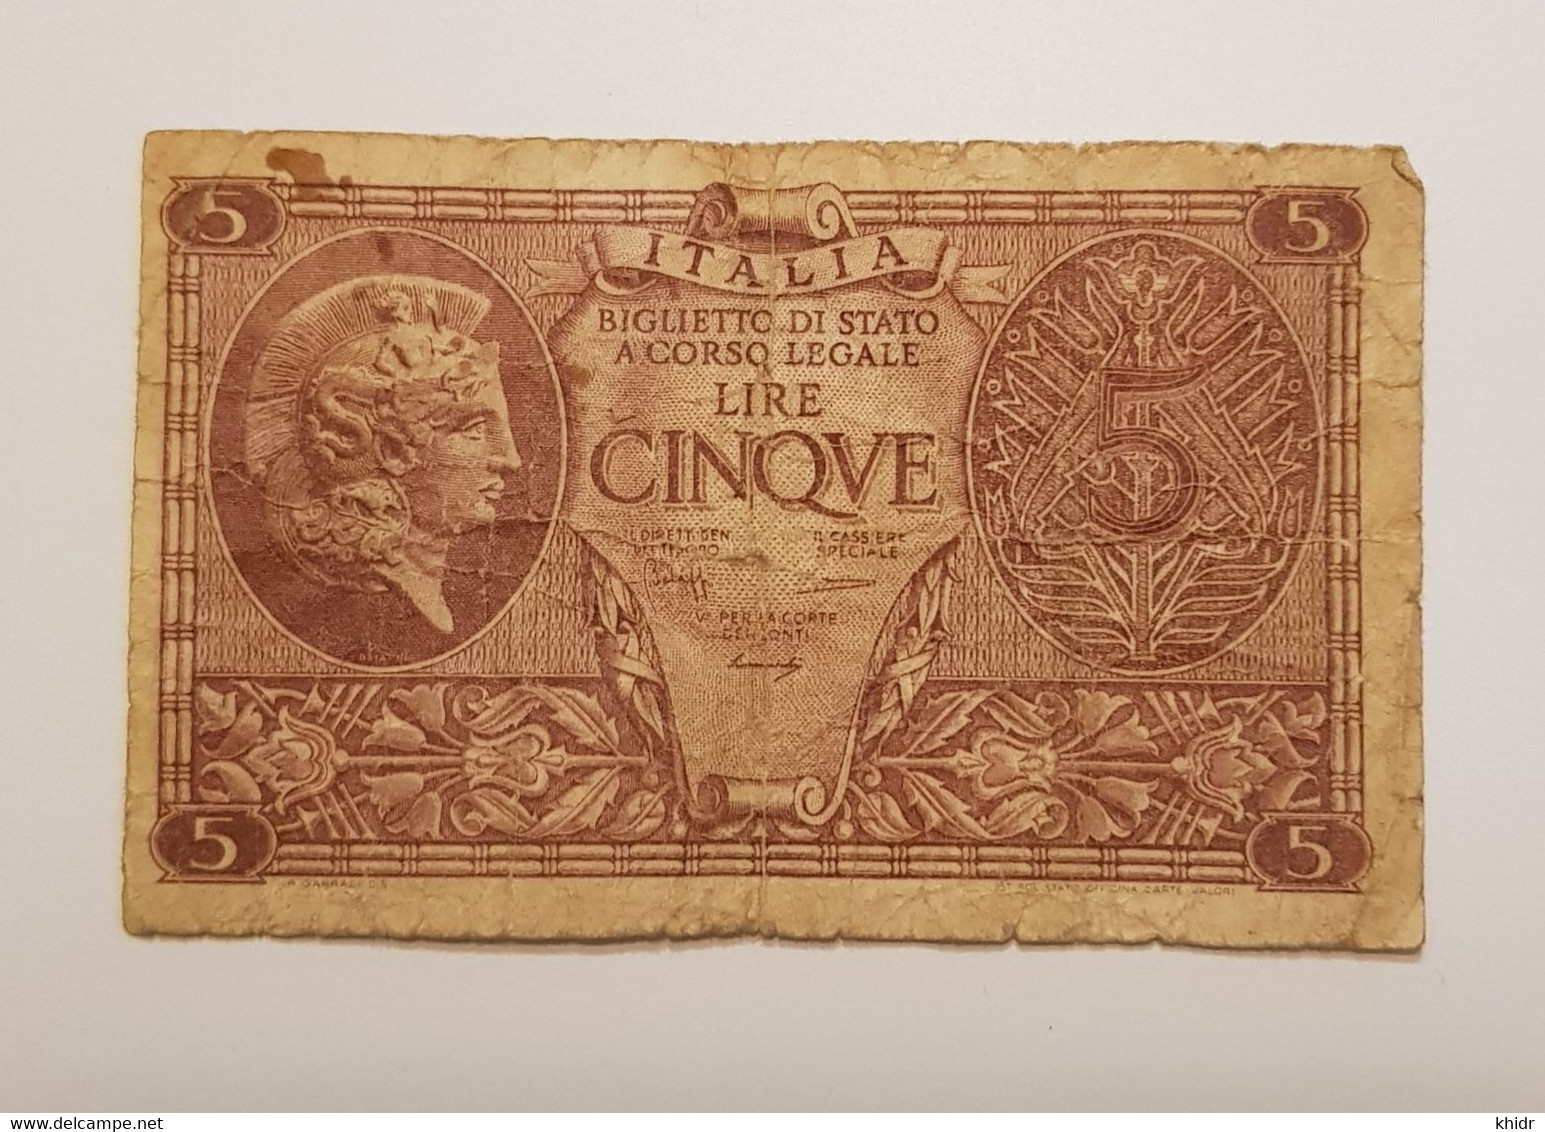 Billet De 5 Lire 23.11.1944 Sigs. Bolaffi, Cavallaro And Giovinco.* 0378 P# 31 - Italia – 5 Lire